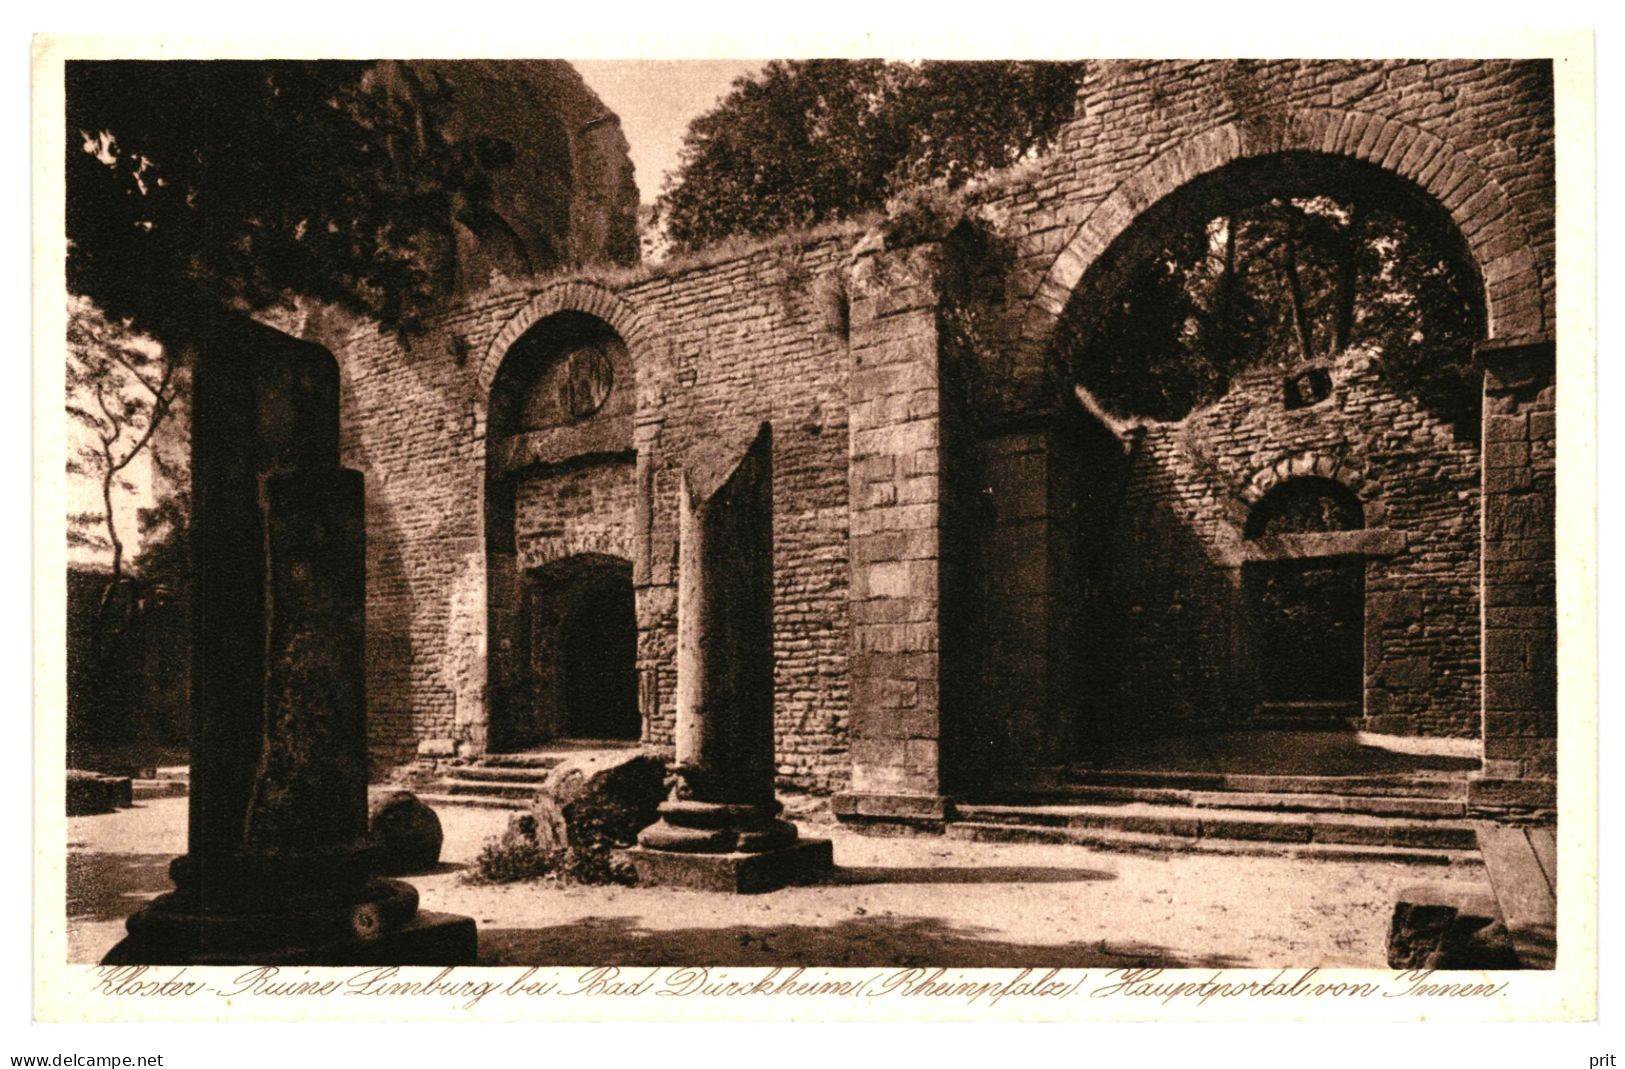 Kloster Ruine Limburg Bei Bad Dürkheim Hauptportal Von Innen 1920s Unused Real Photo Postcard - Bad Dürkheim